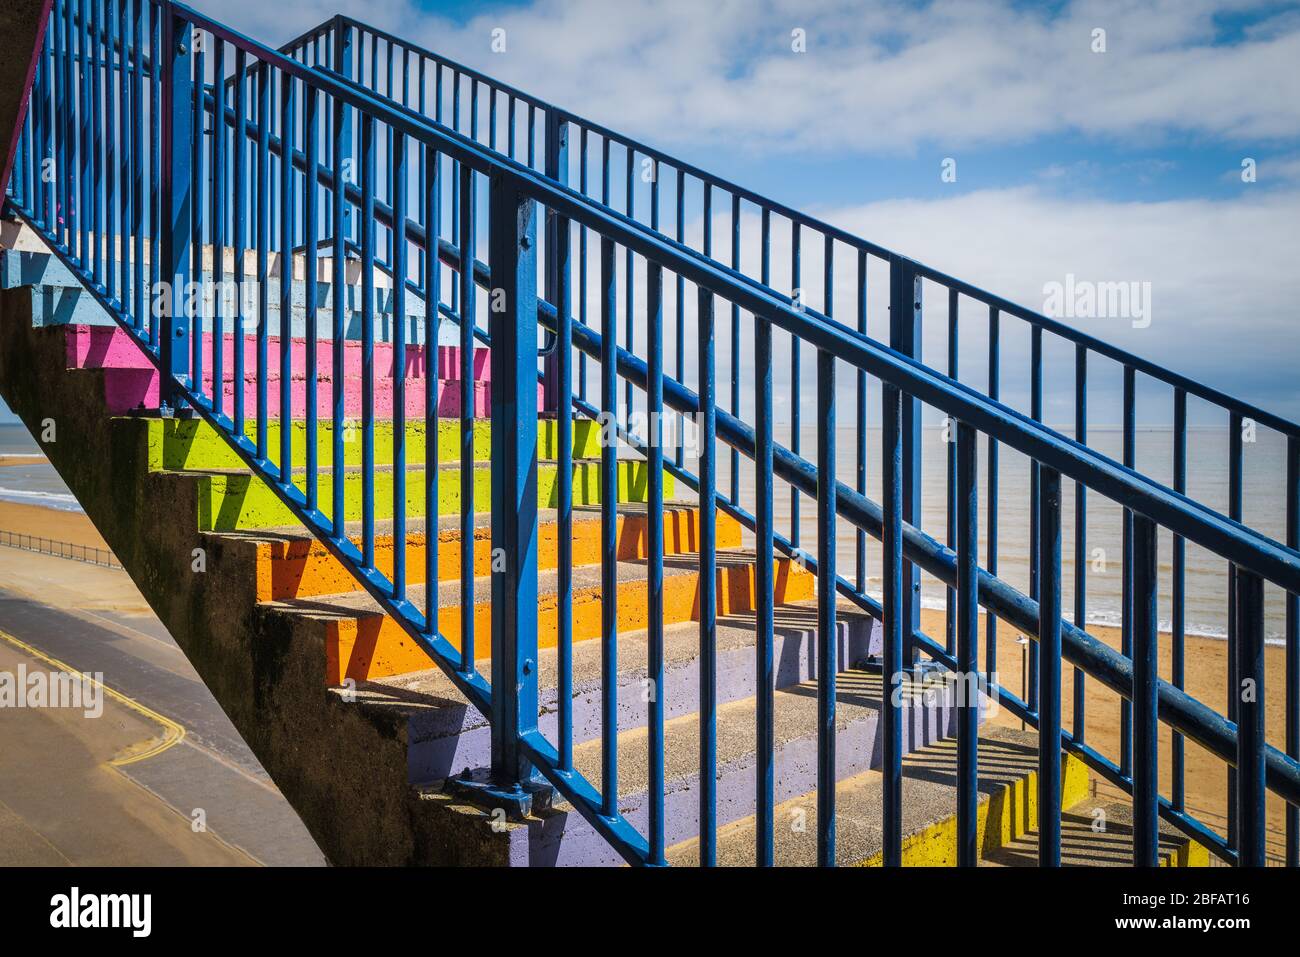 Gradini in cemento dipinti colori arcobaleno con una ringhiera blu davanti ad una spiaggia di sabbia, il cielo è blu con nuvole bianche. Foto Stock